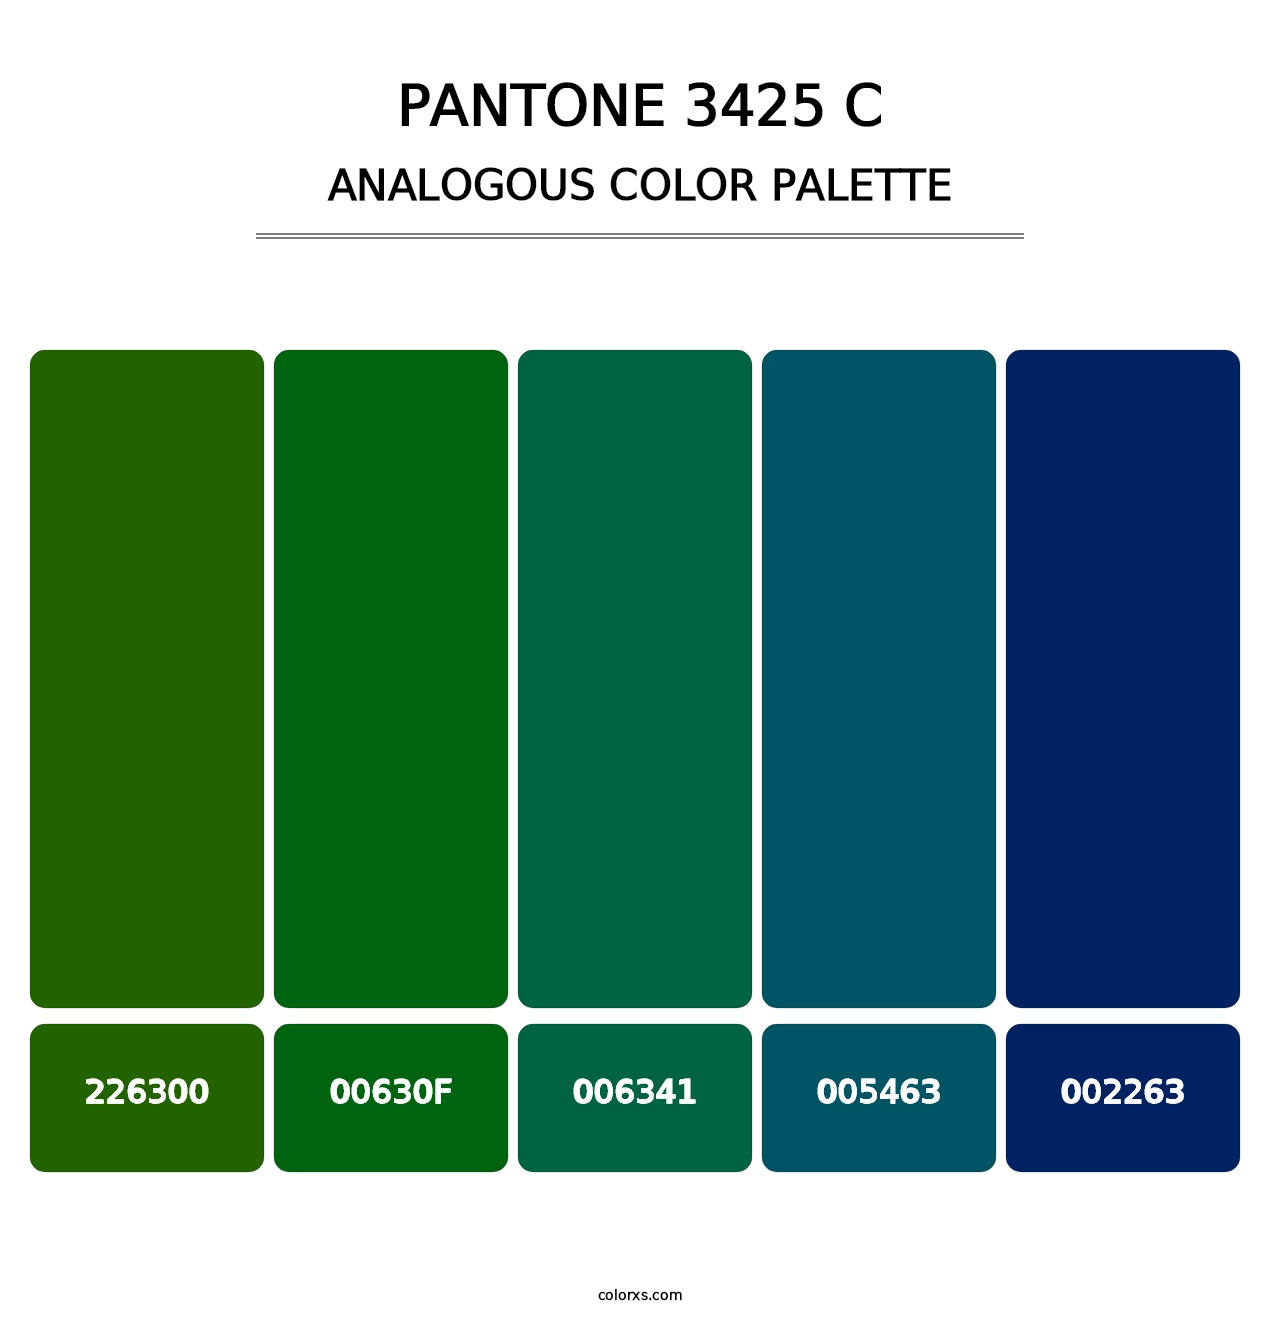 PANTONE 3425 C - Analogous Color Palette